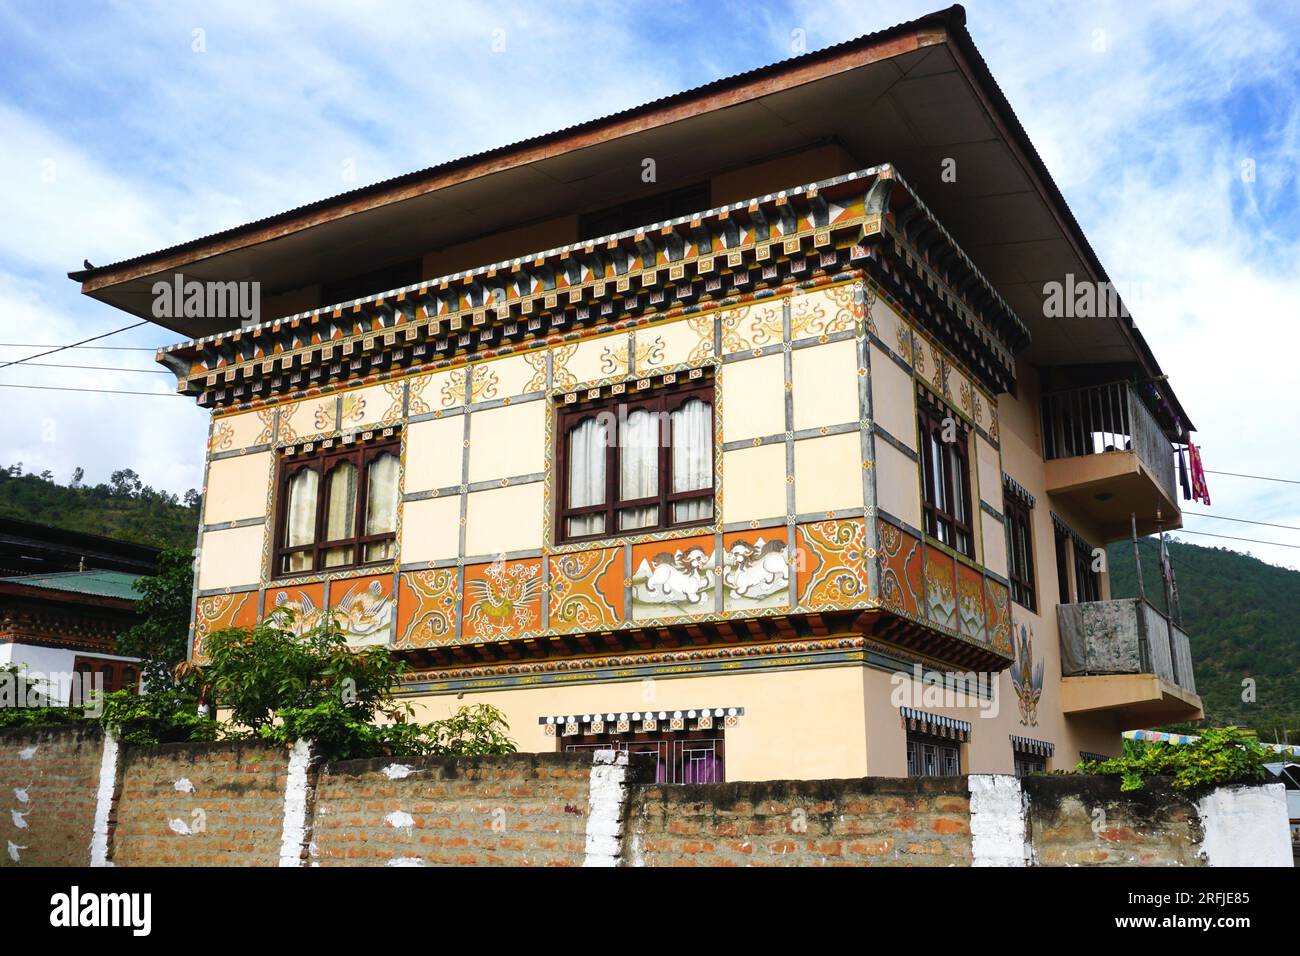 Architecture bhoutanaise typique avec toit en surplomb carré, charpente en bois, chevrons saillants peints, fenêtres triplées et peintures murales décoratives Banque D'Images